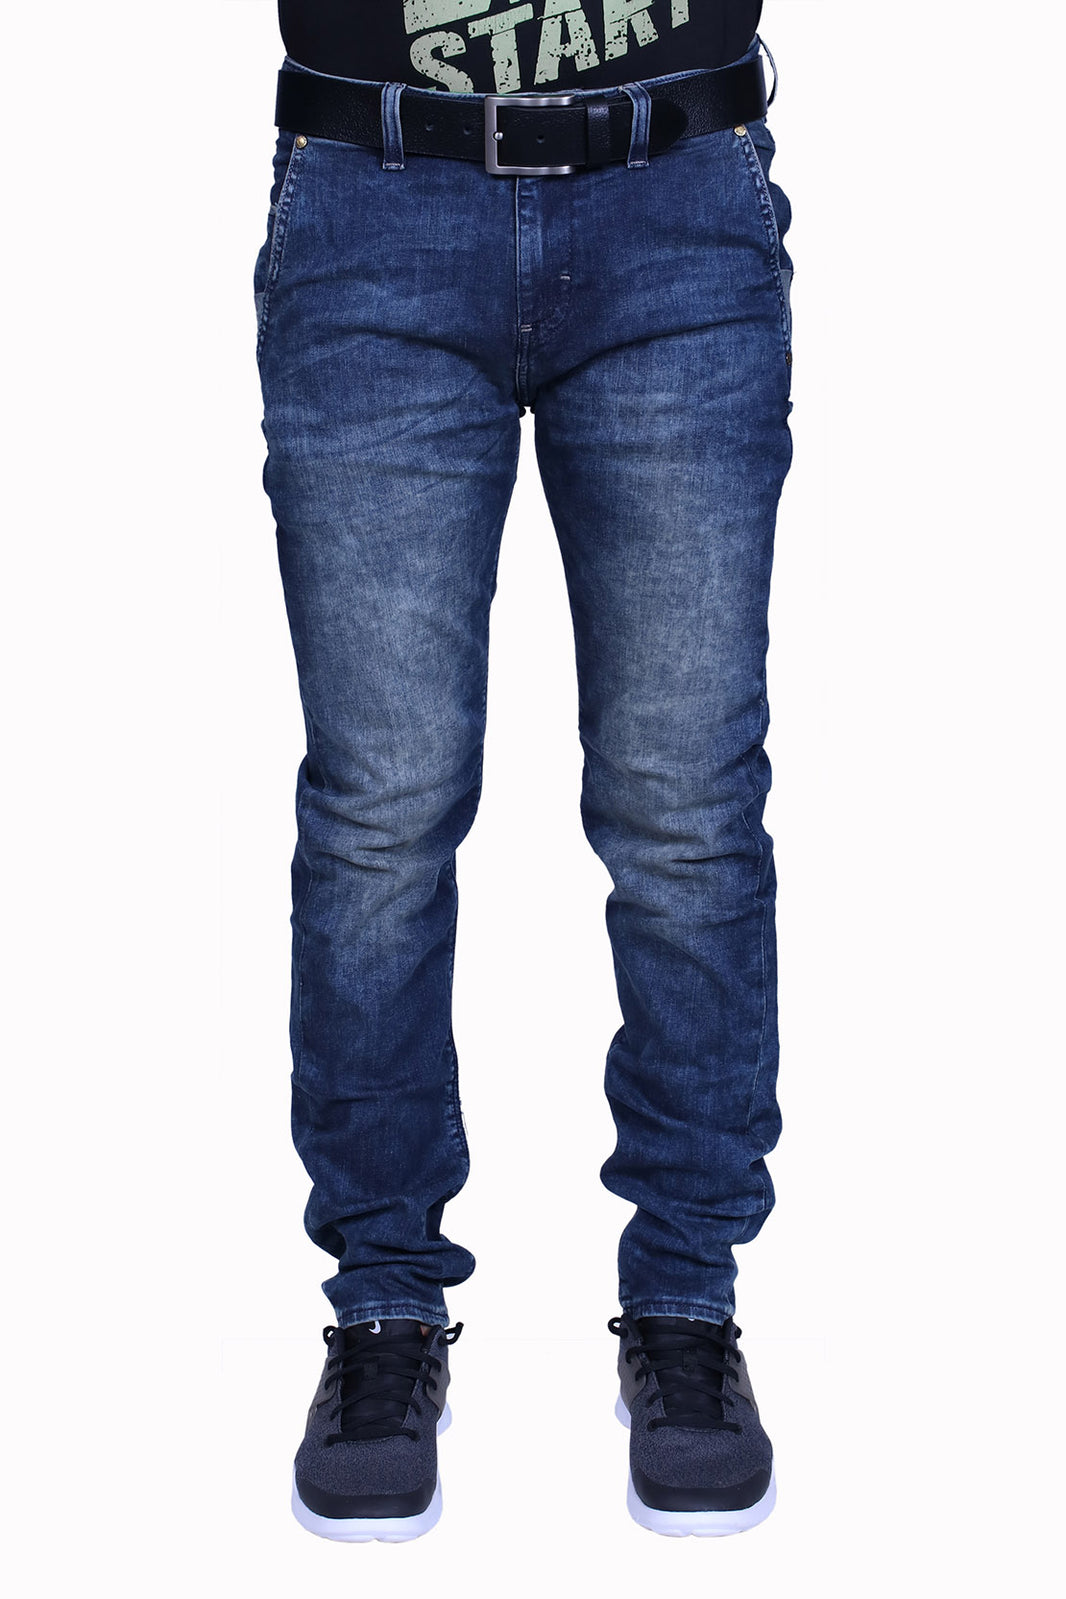 Best Denim Men Jeans Shop in Karachi – HAWKWEAR JEANS CO.